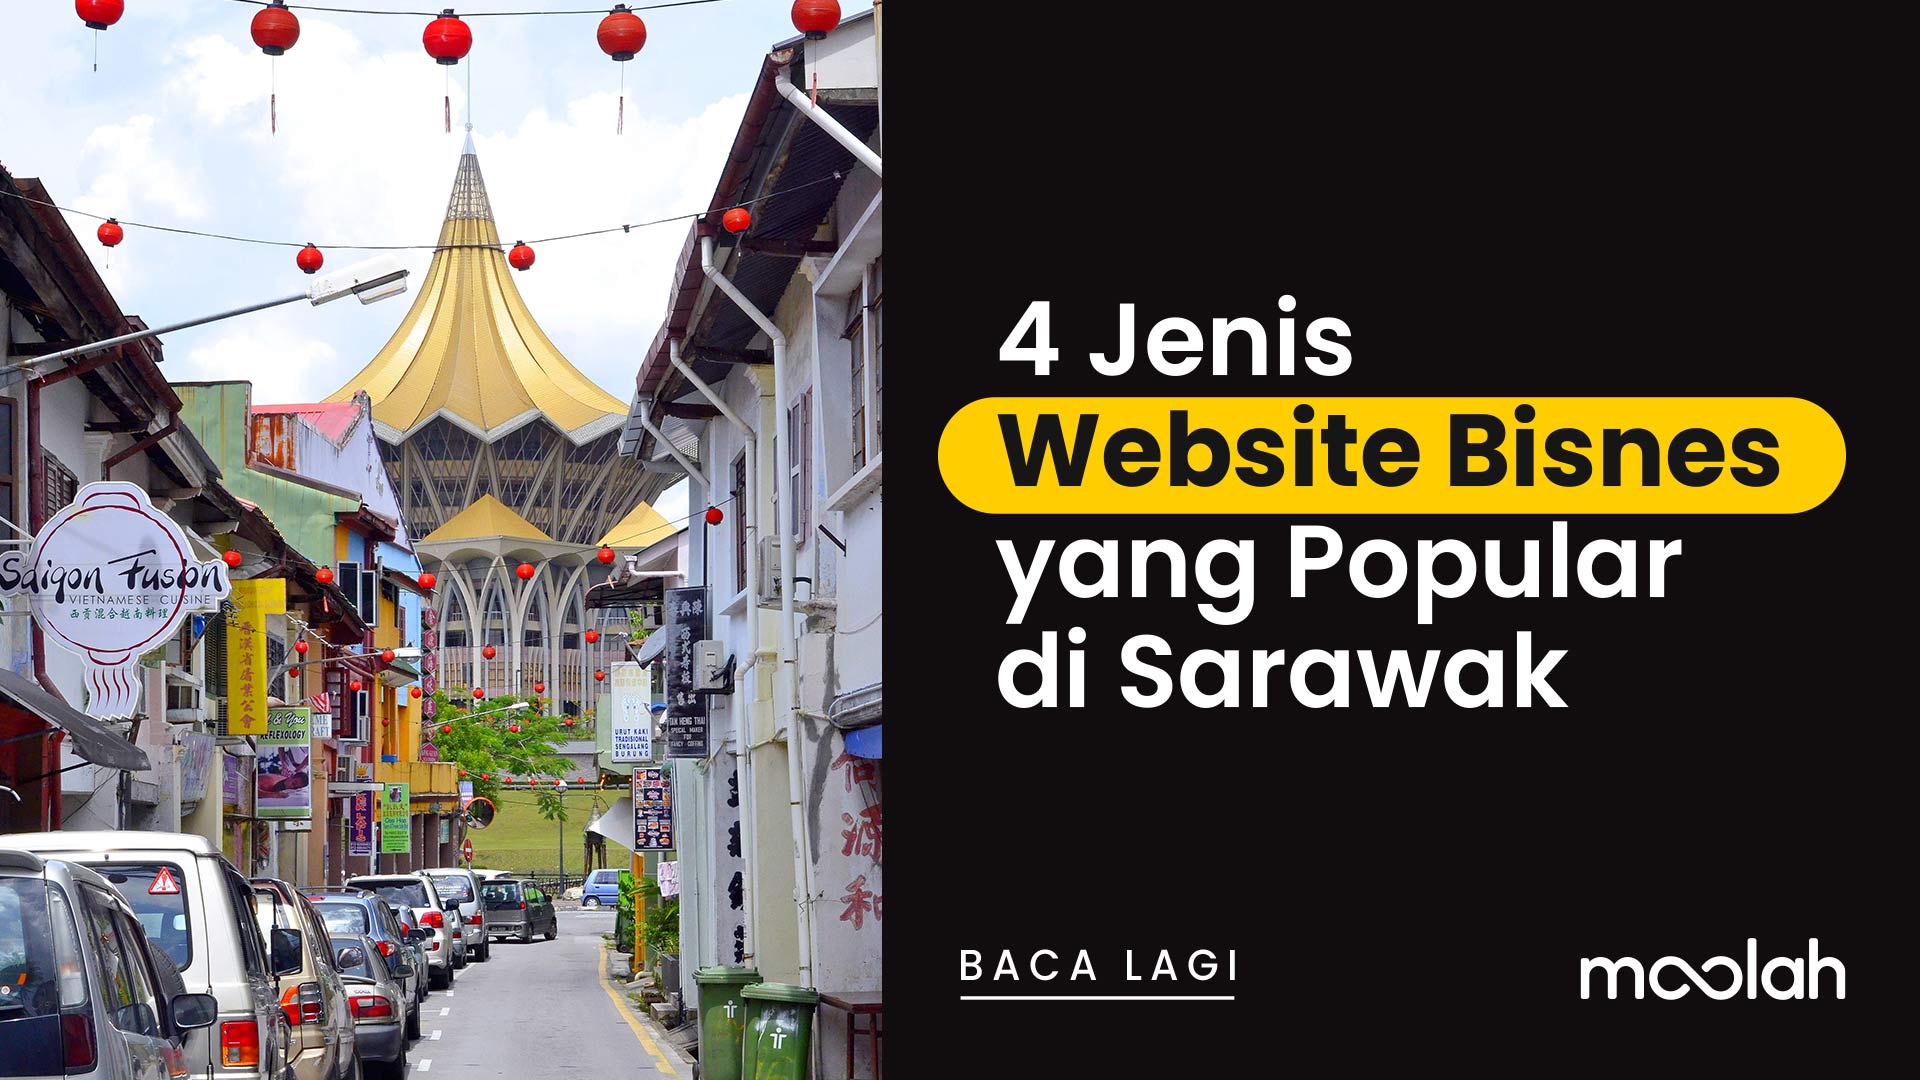 4 Jenis Website Bisnes yang Popular di Sarawak